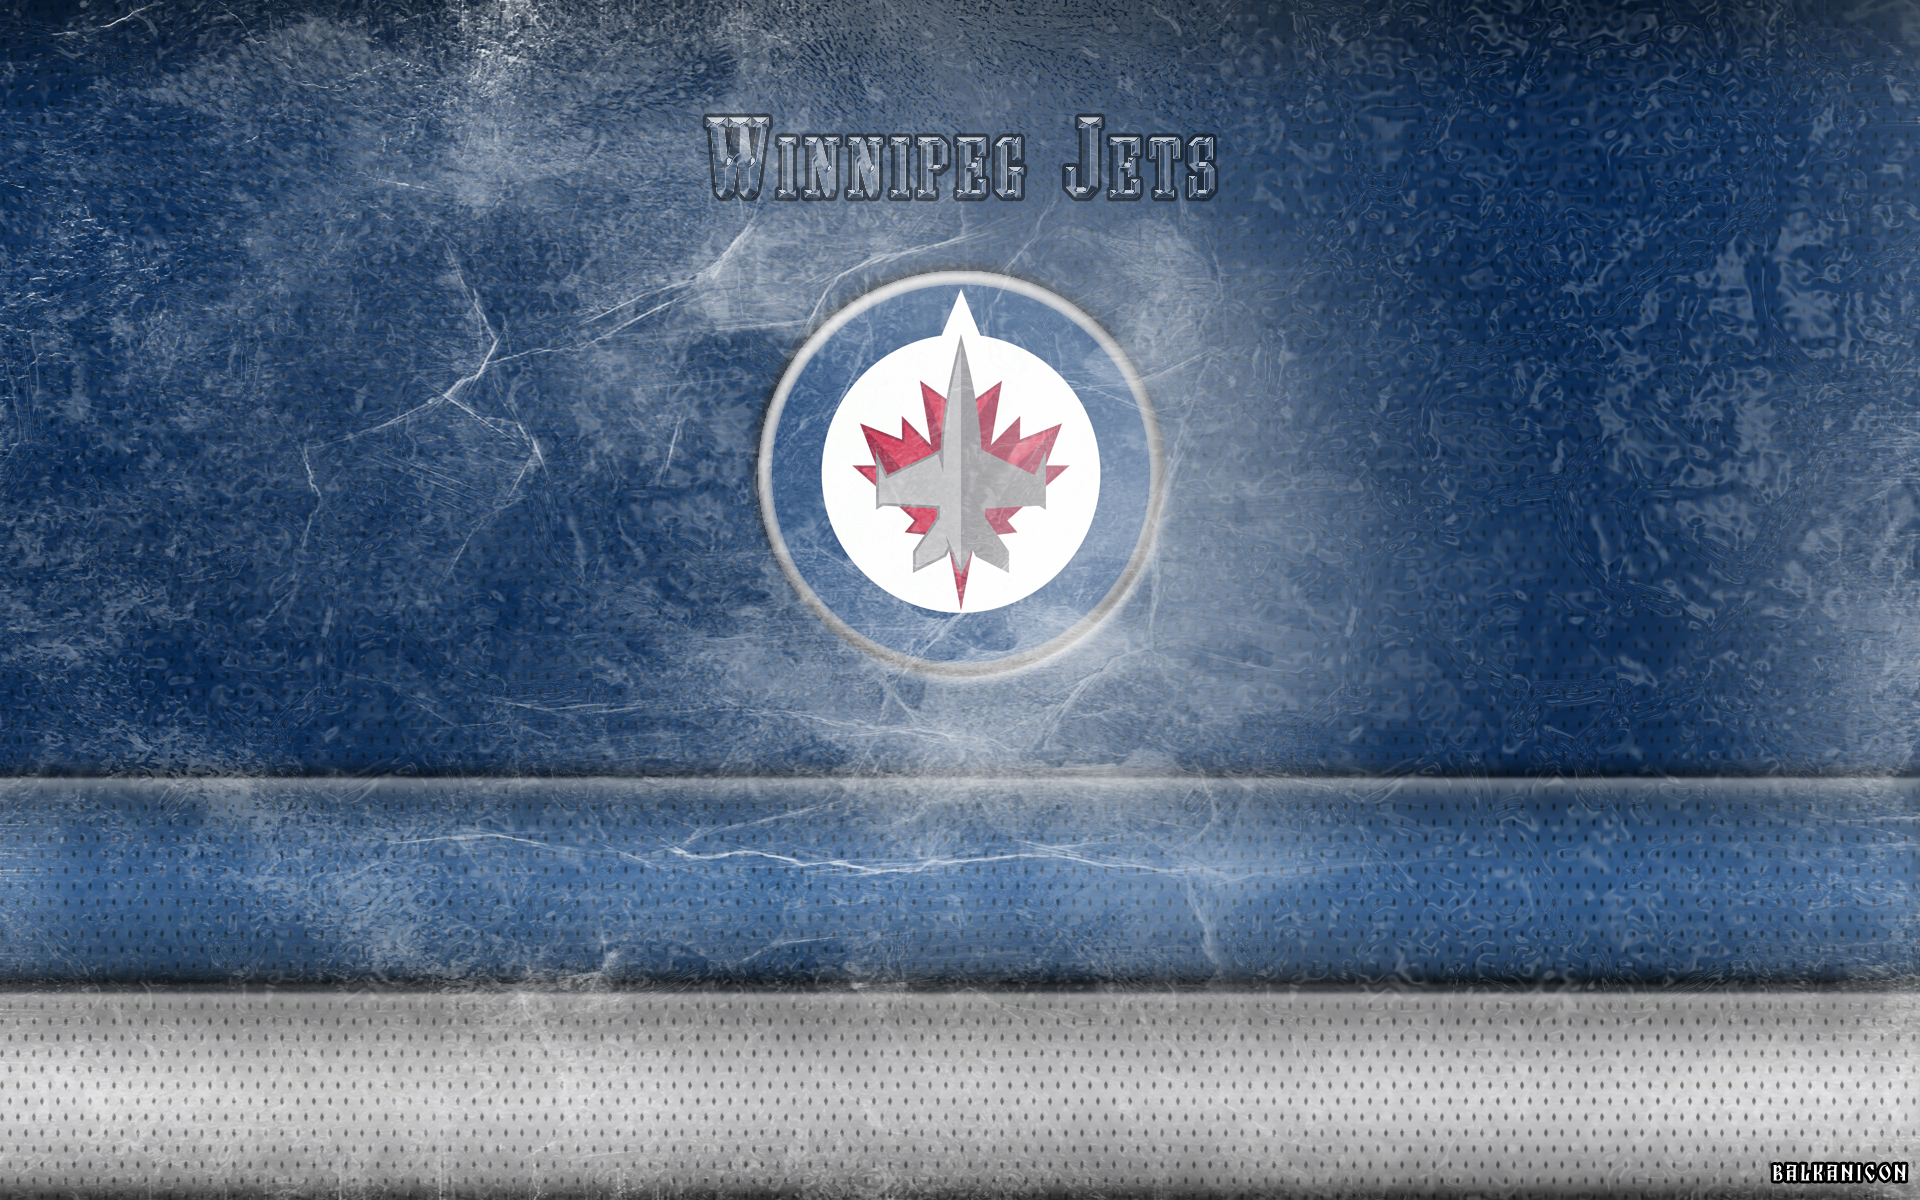 Winnipeg Jets wallpaper by Balkanicon on